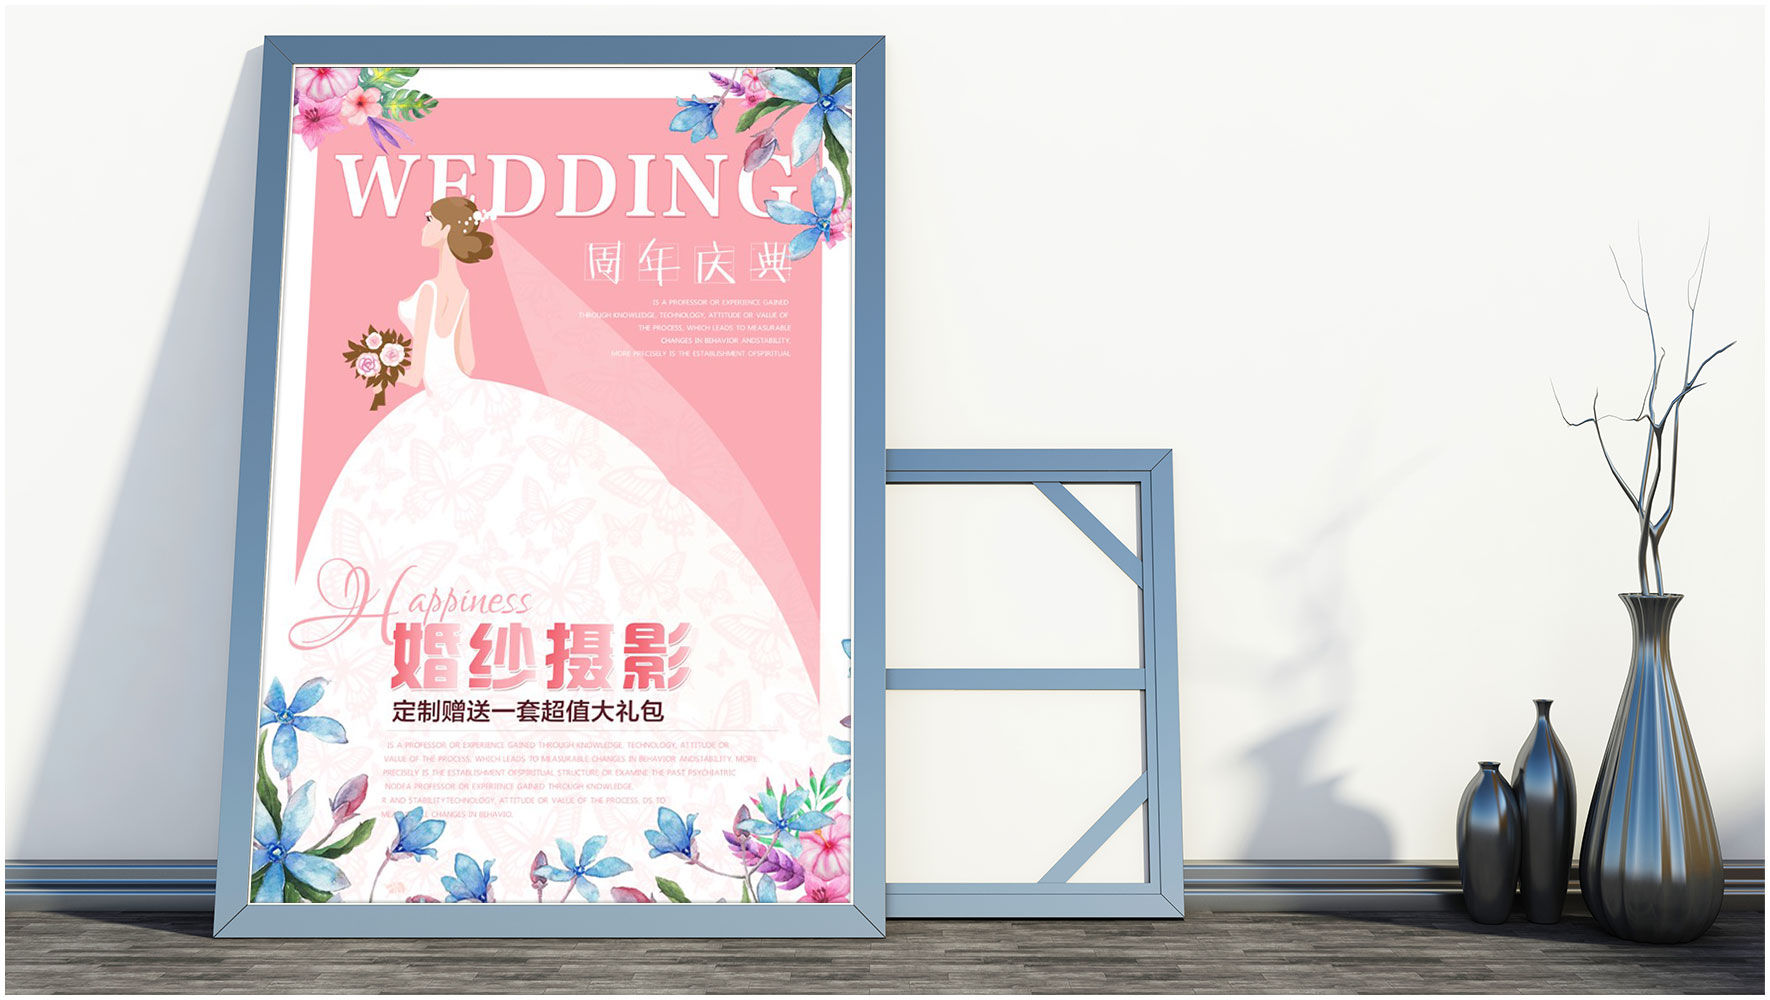 清新淡雅的婚纱摄影PSD周年庆宣传海报